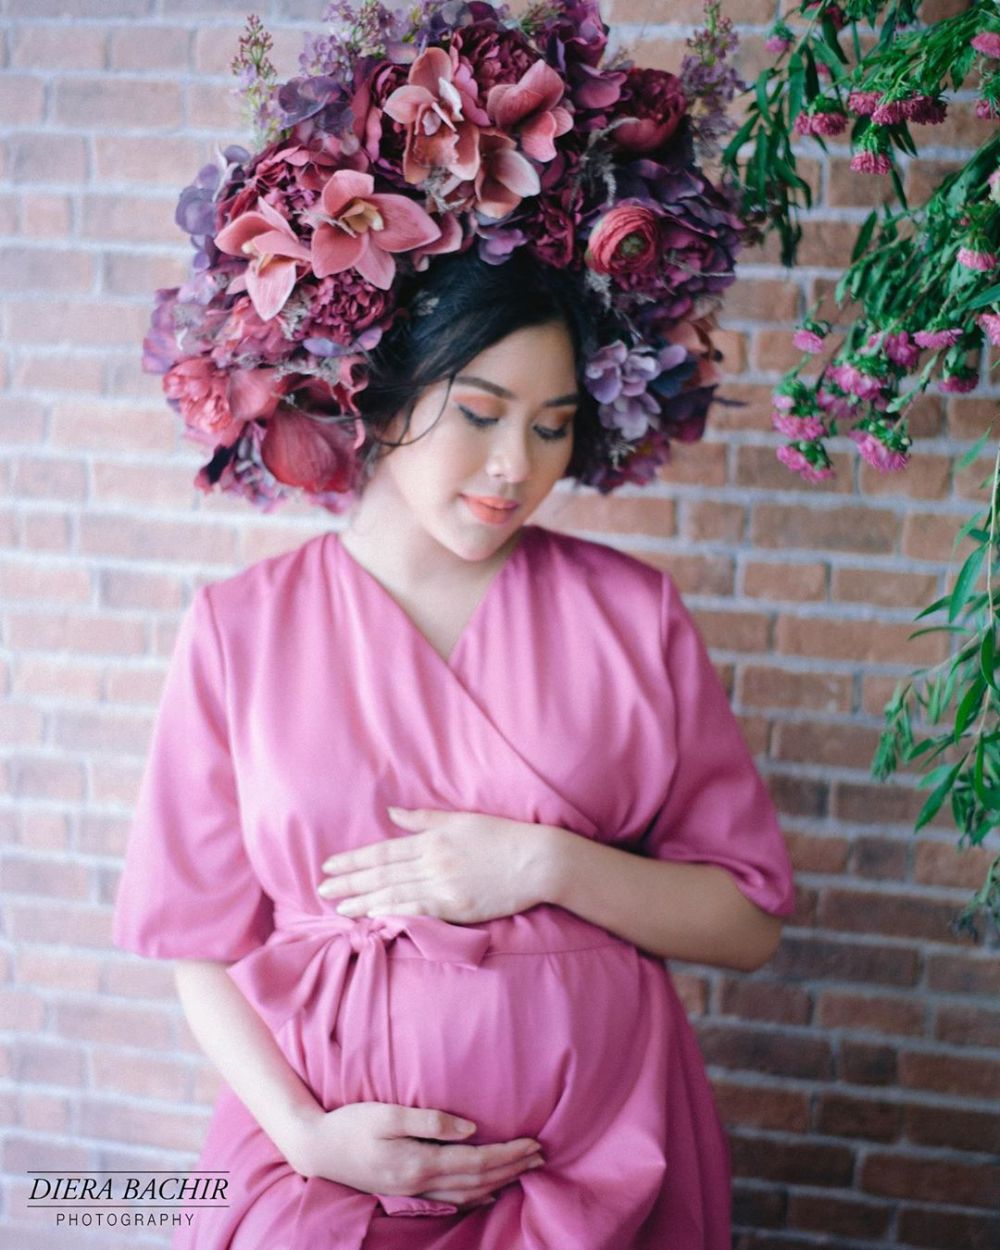 8 Potret maternity Syahnaz bertema taman bunga, anggun abis